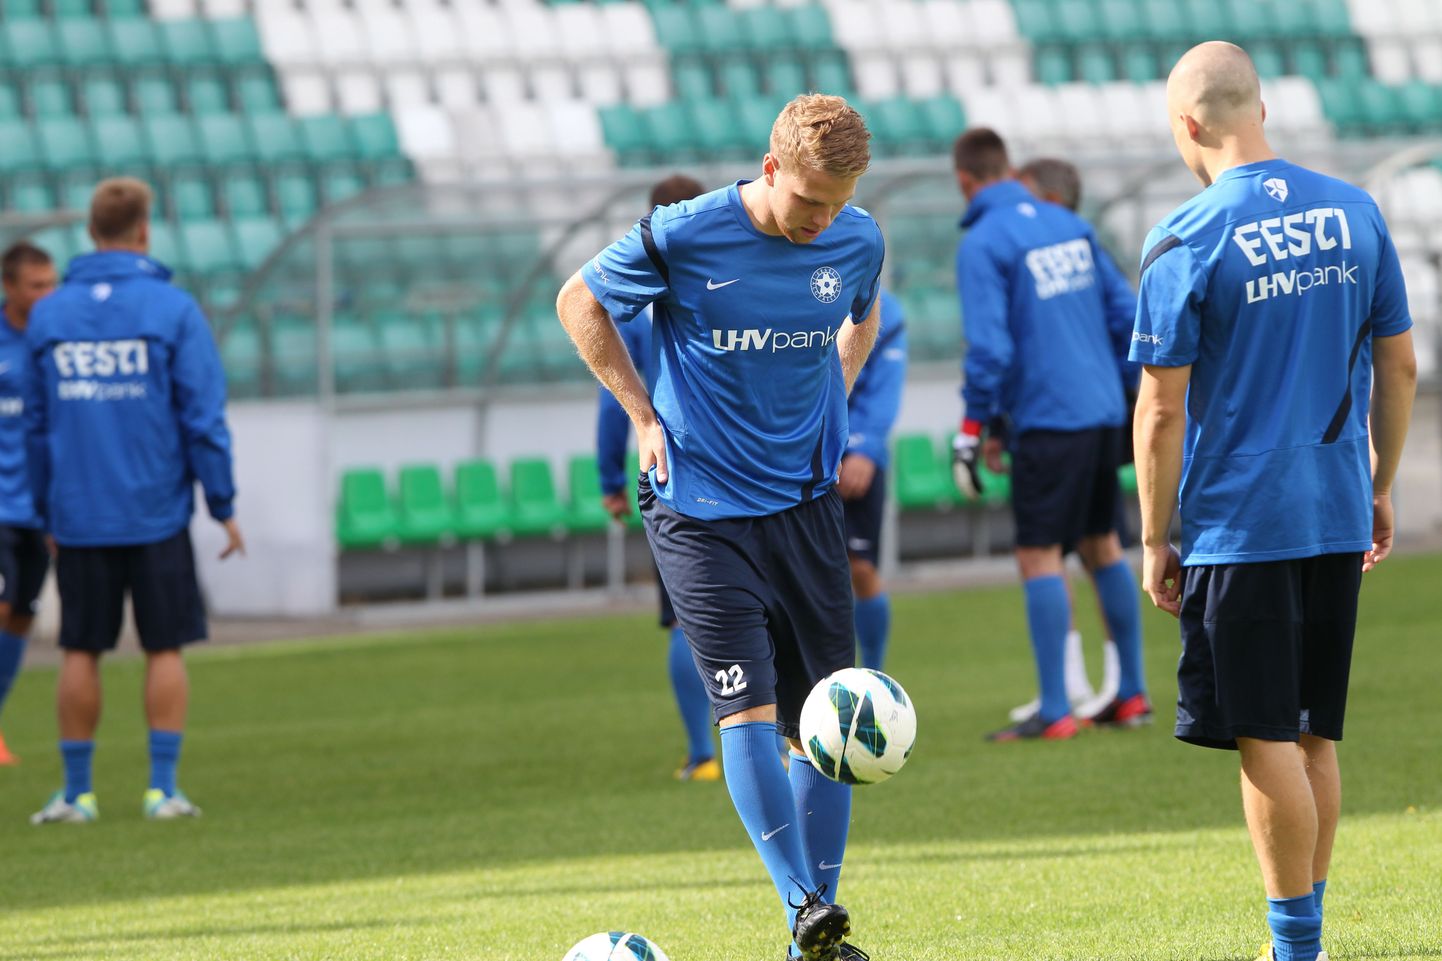 Eesti jalgpallikoondis kogunes täna Lilleküla staadionil, et teha esimene ühine trenn enne kolmapäevast kohtumist Lätiga.